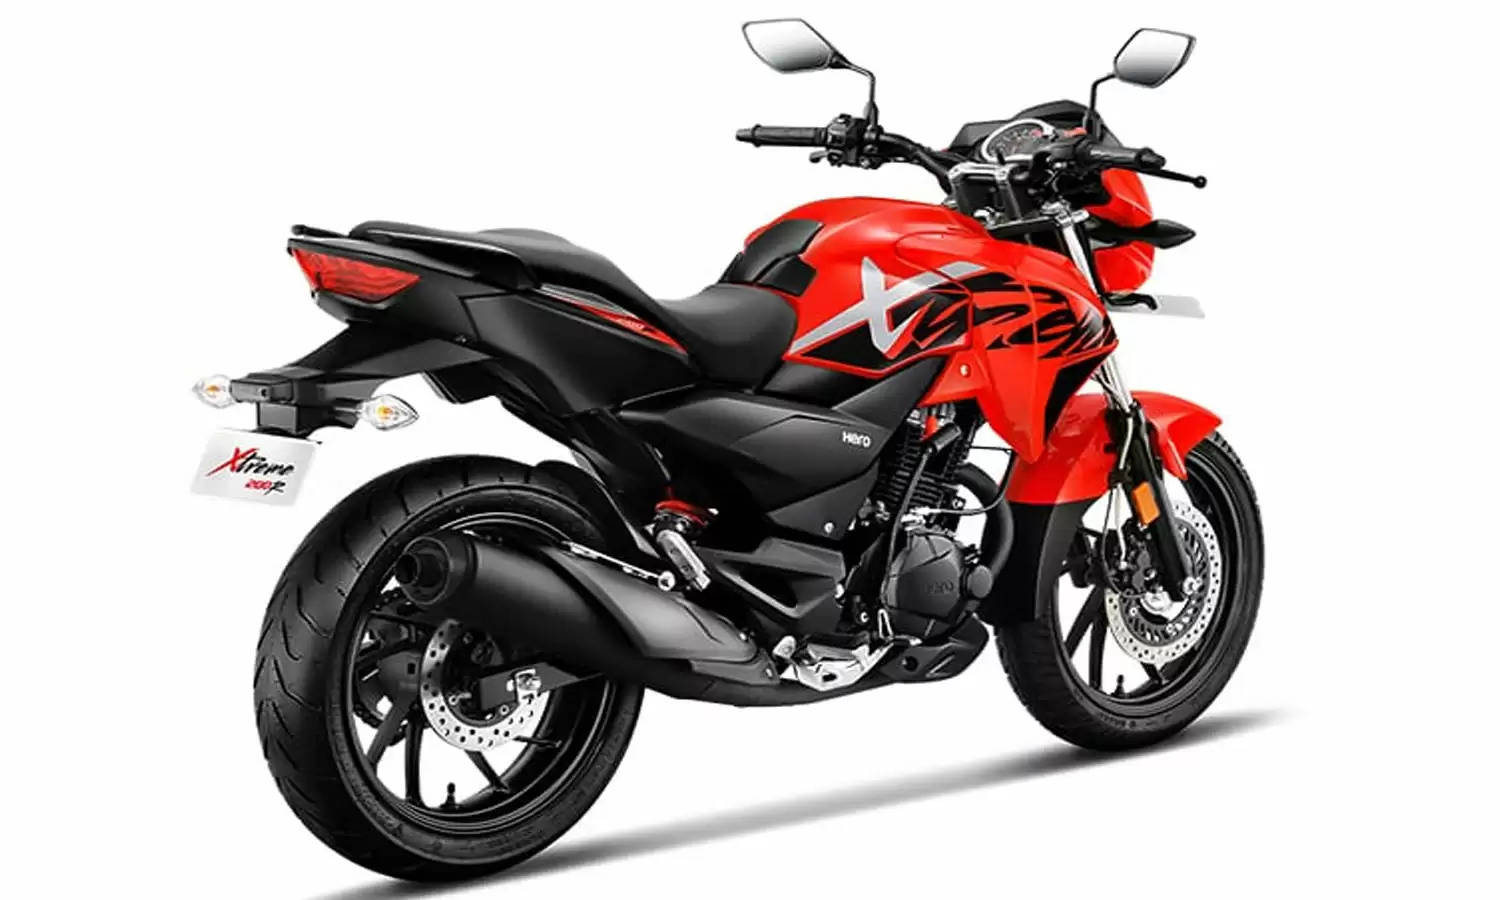 HERO की 2019 मॉडल बाइक 20,000 रुपये में तुरंत खरीदें, जानिए कीमत और खूबियां